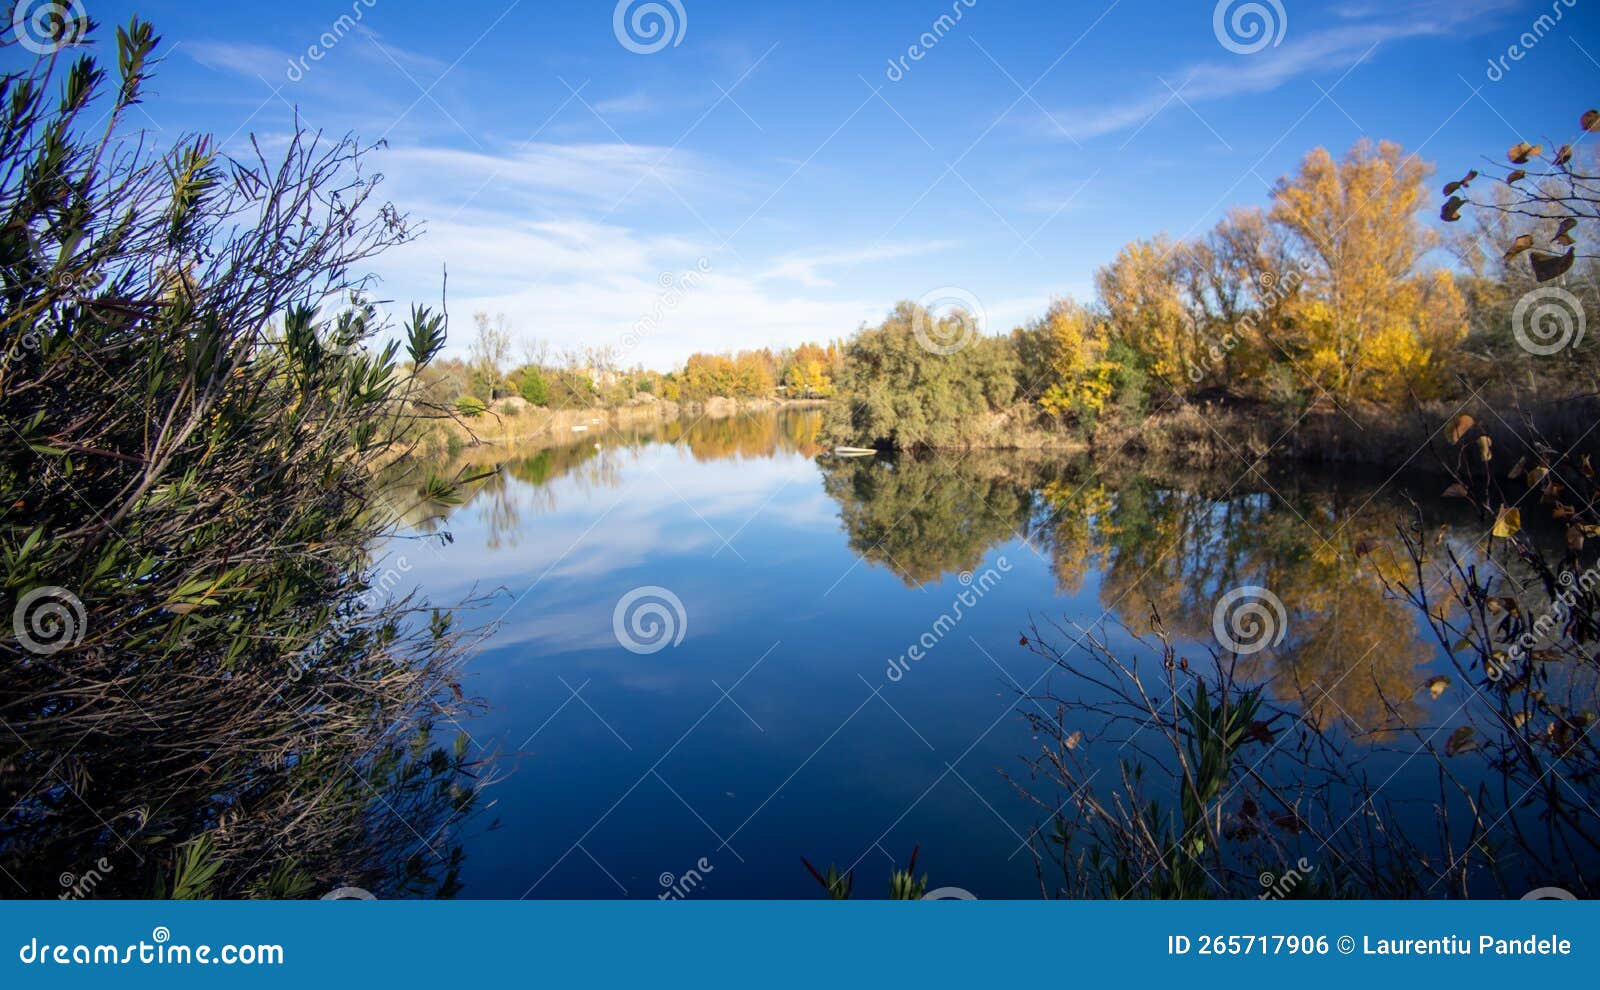 landscape lake in lagunas de las madres arganda del rey